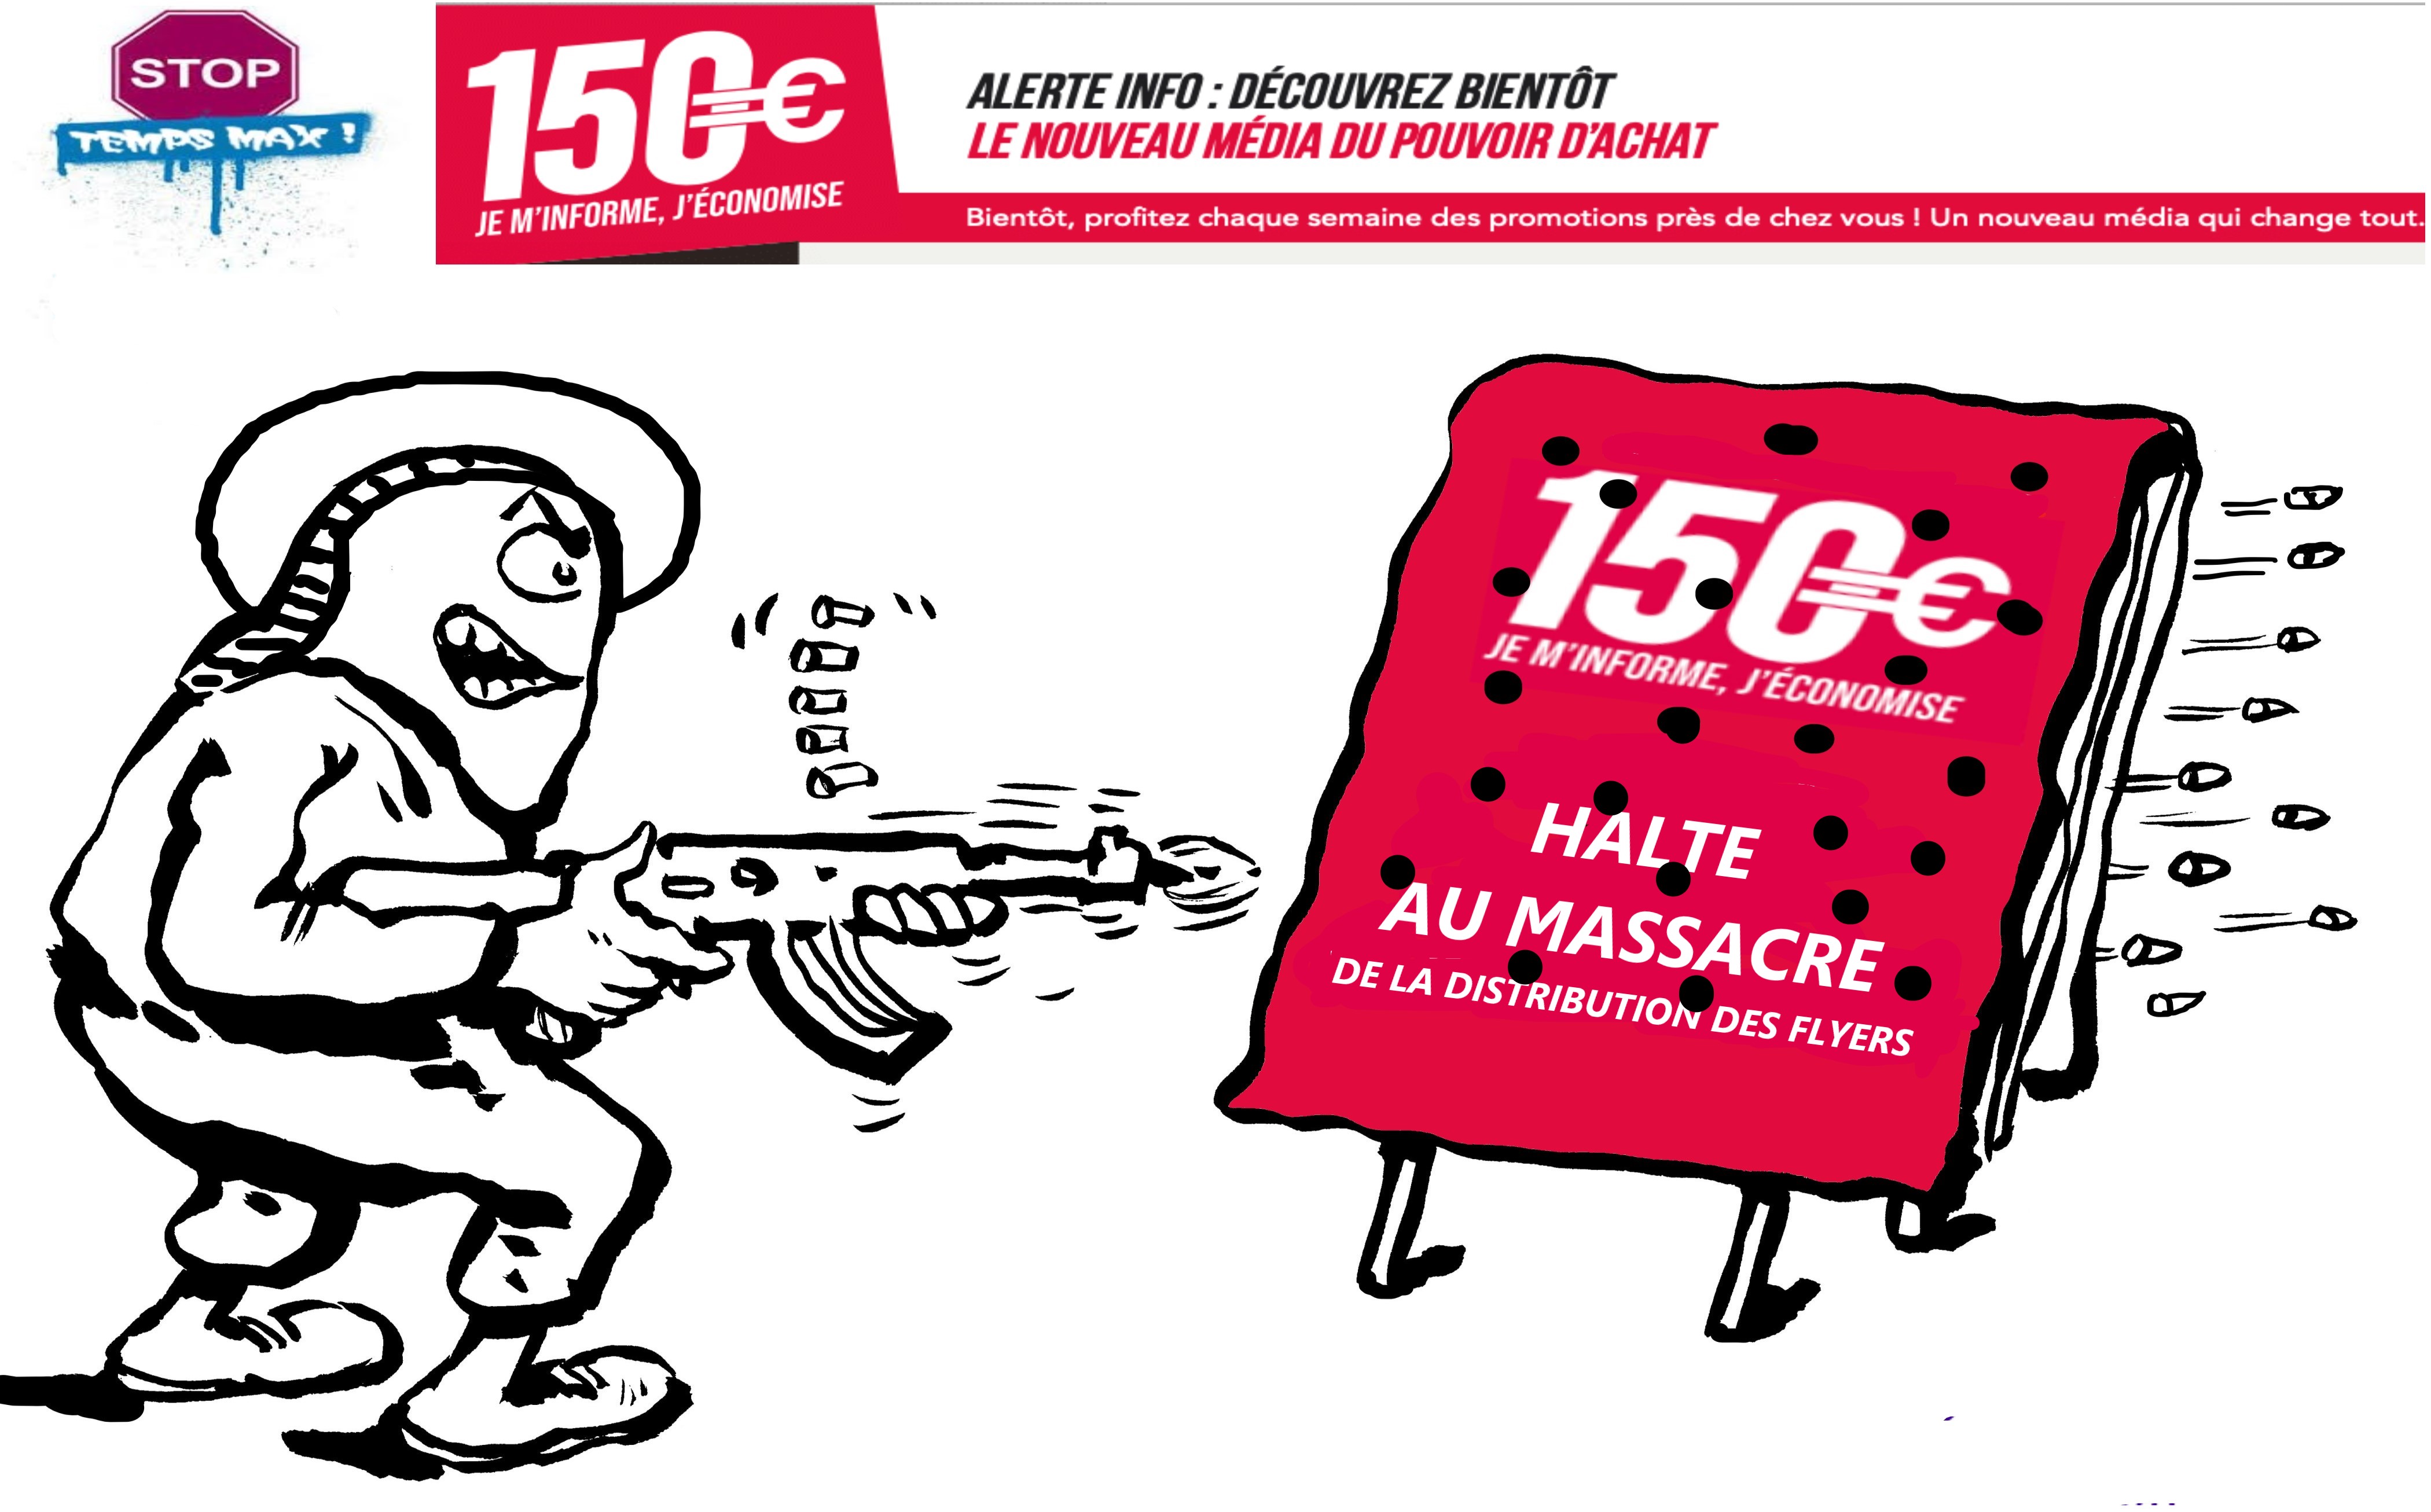 MESSAGER_NERVEUX2 Syndicat FO au service des salariés d'ADREXO - Distribution du flyer 150€ : Halte au massacre !!!